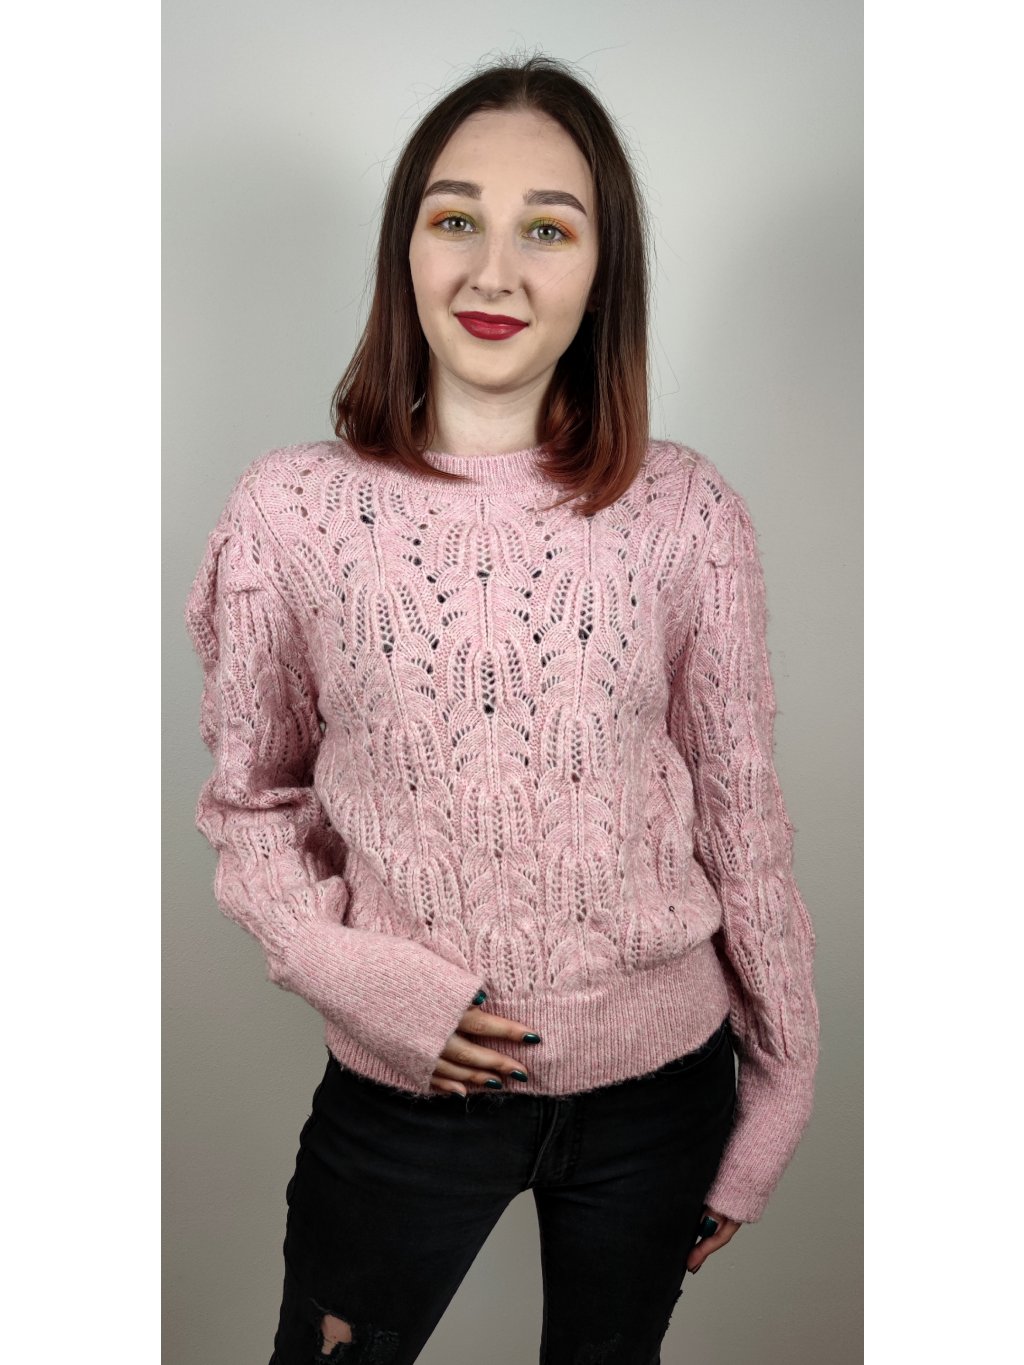 růžový svetr s průstřihy a vzory